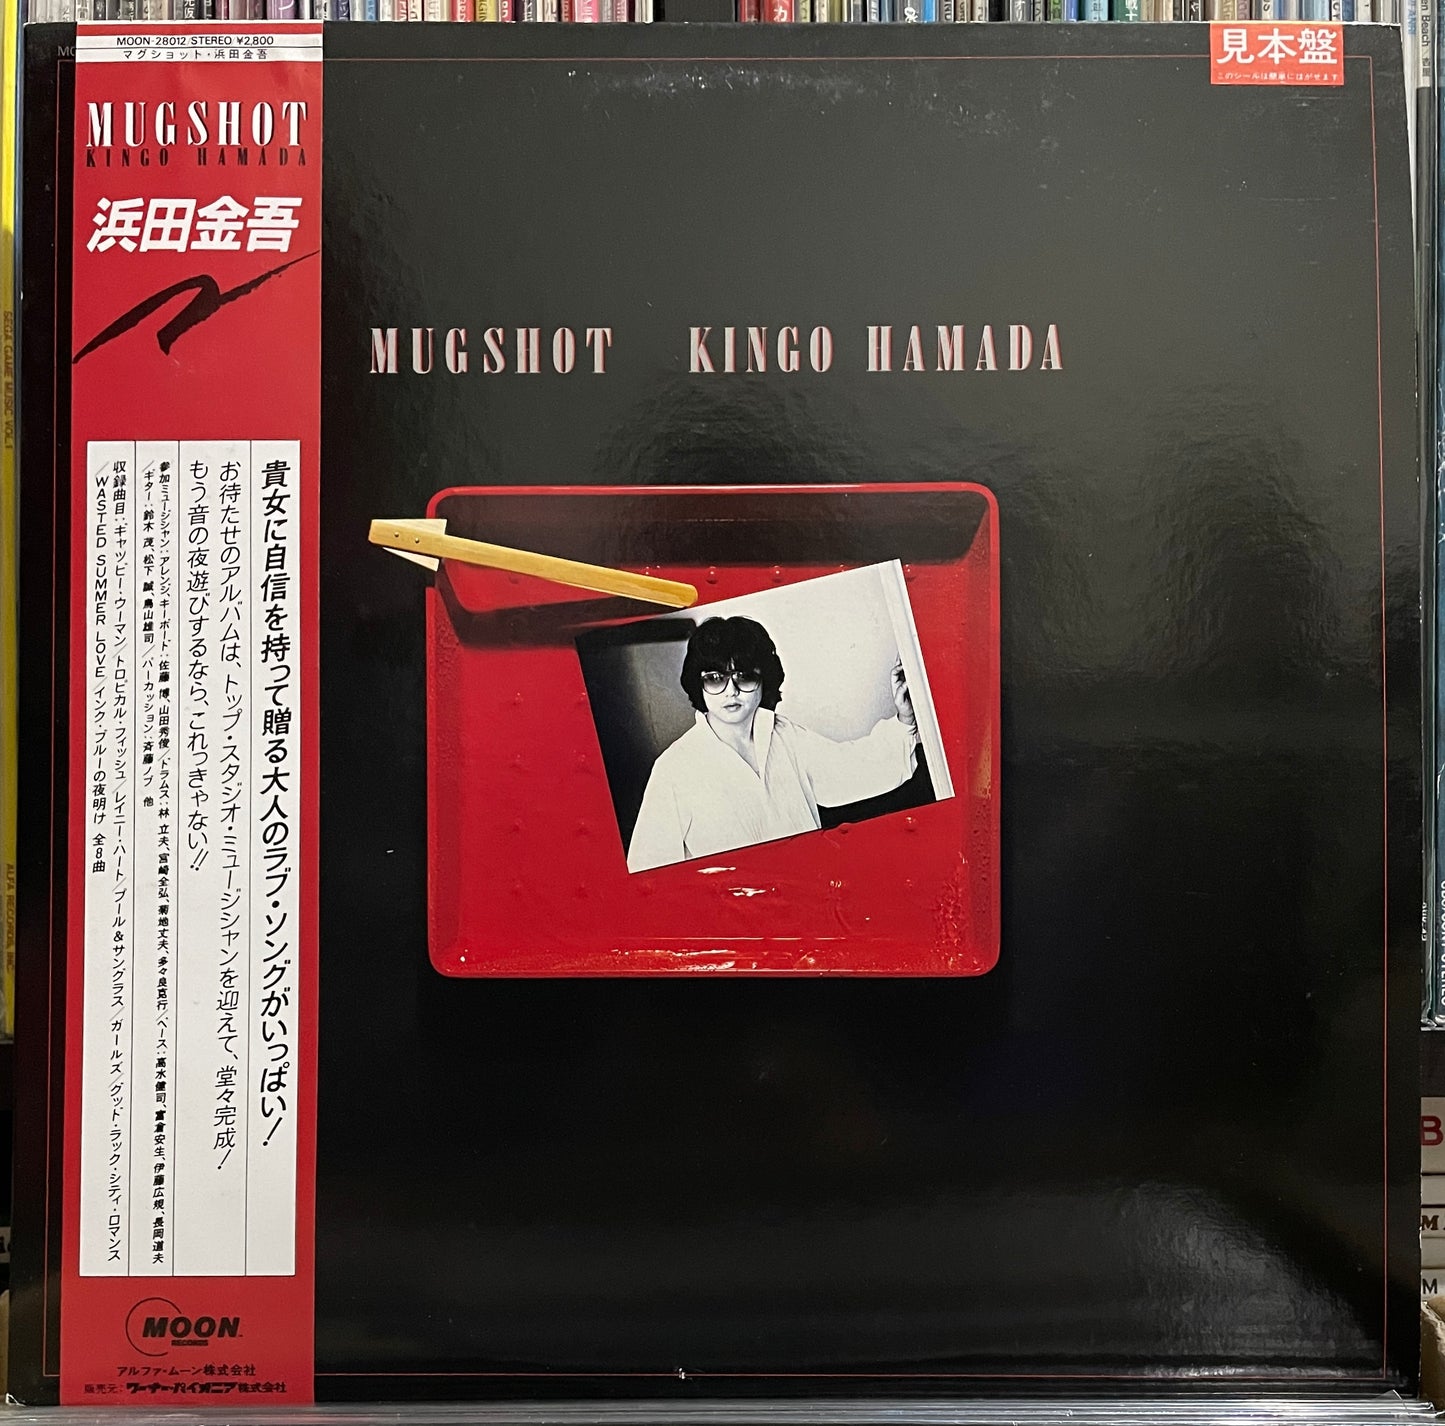 Kingo Hamada “Mugshot” (1983 Promo)